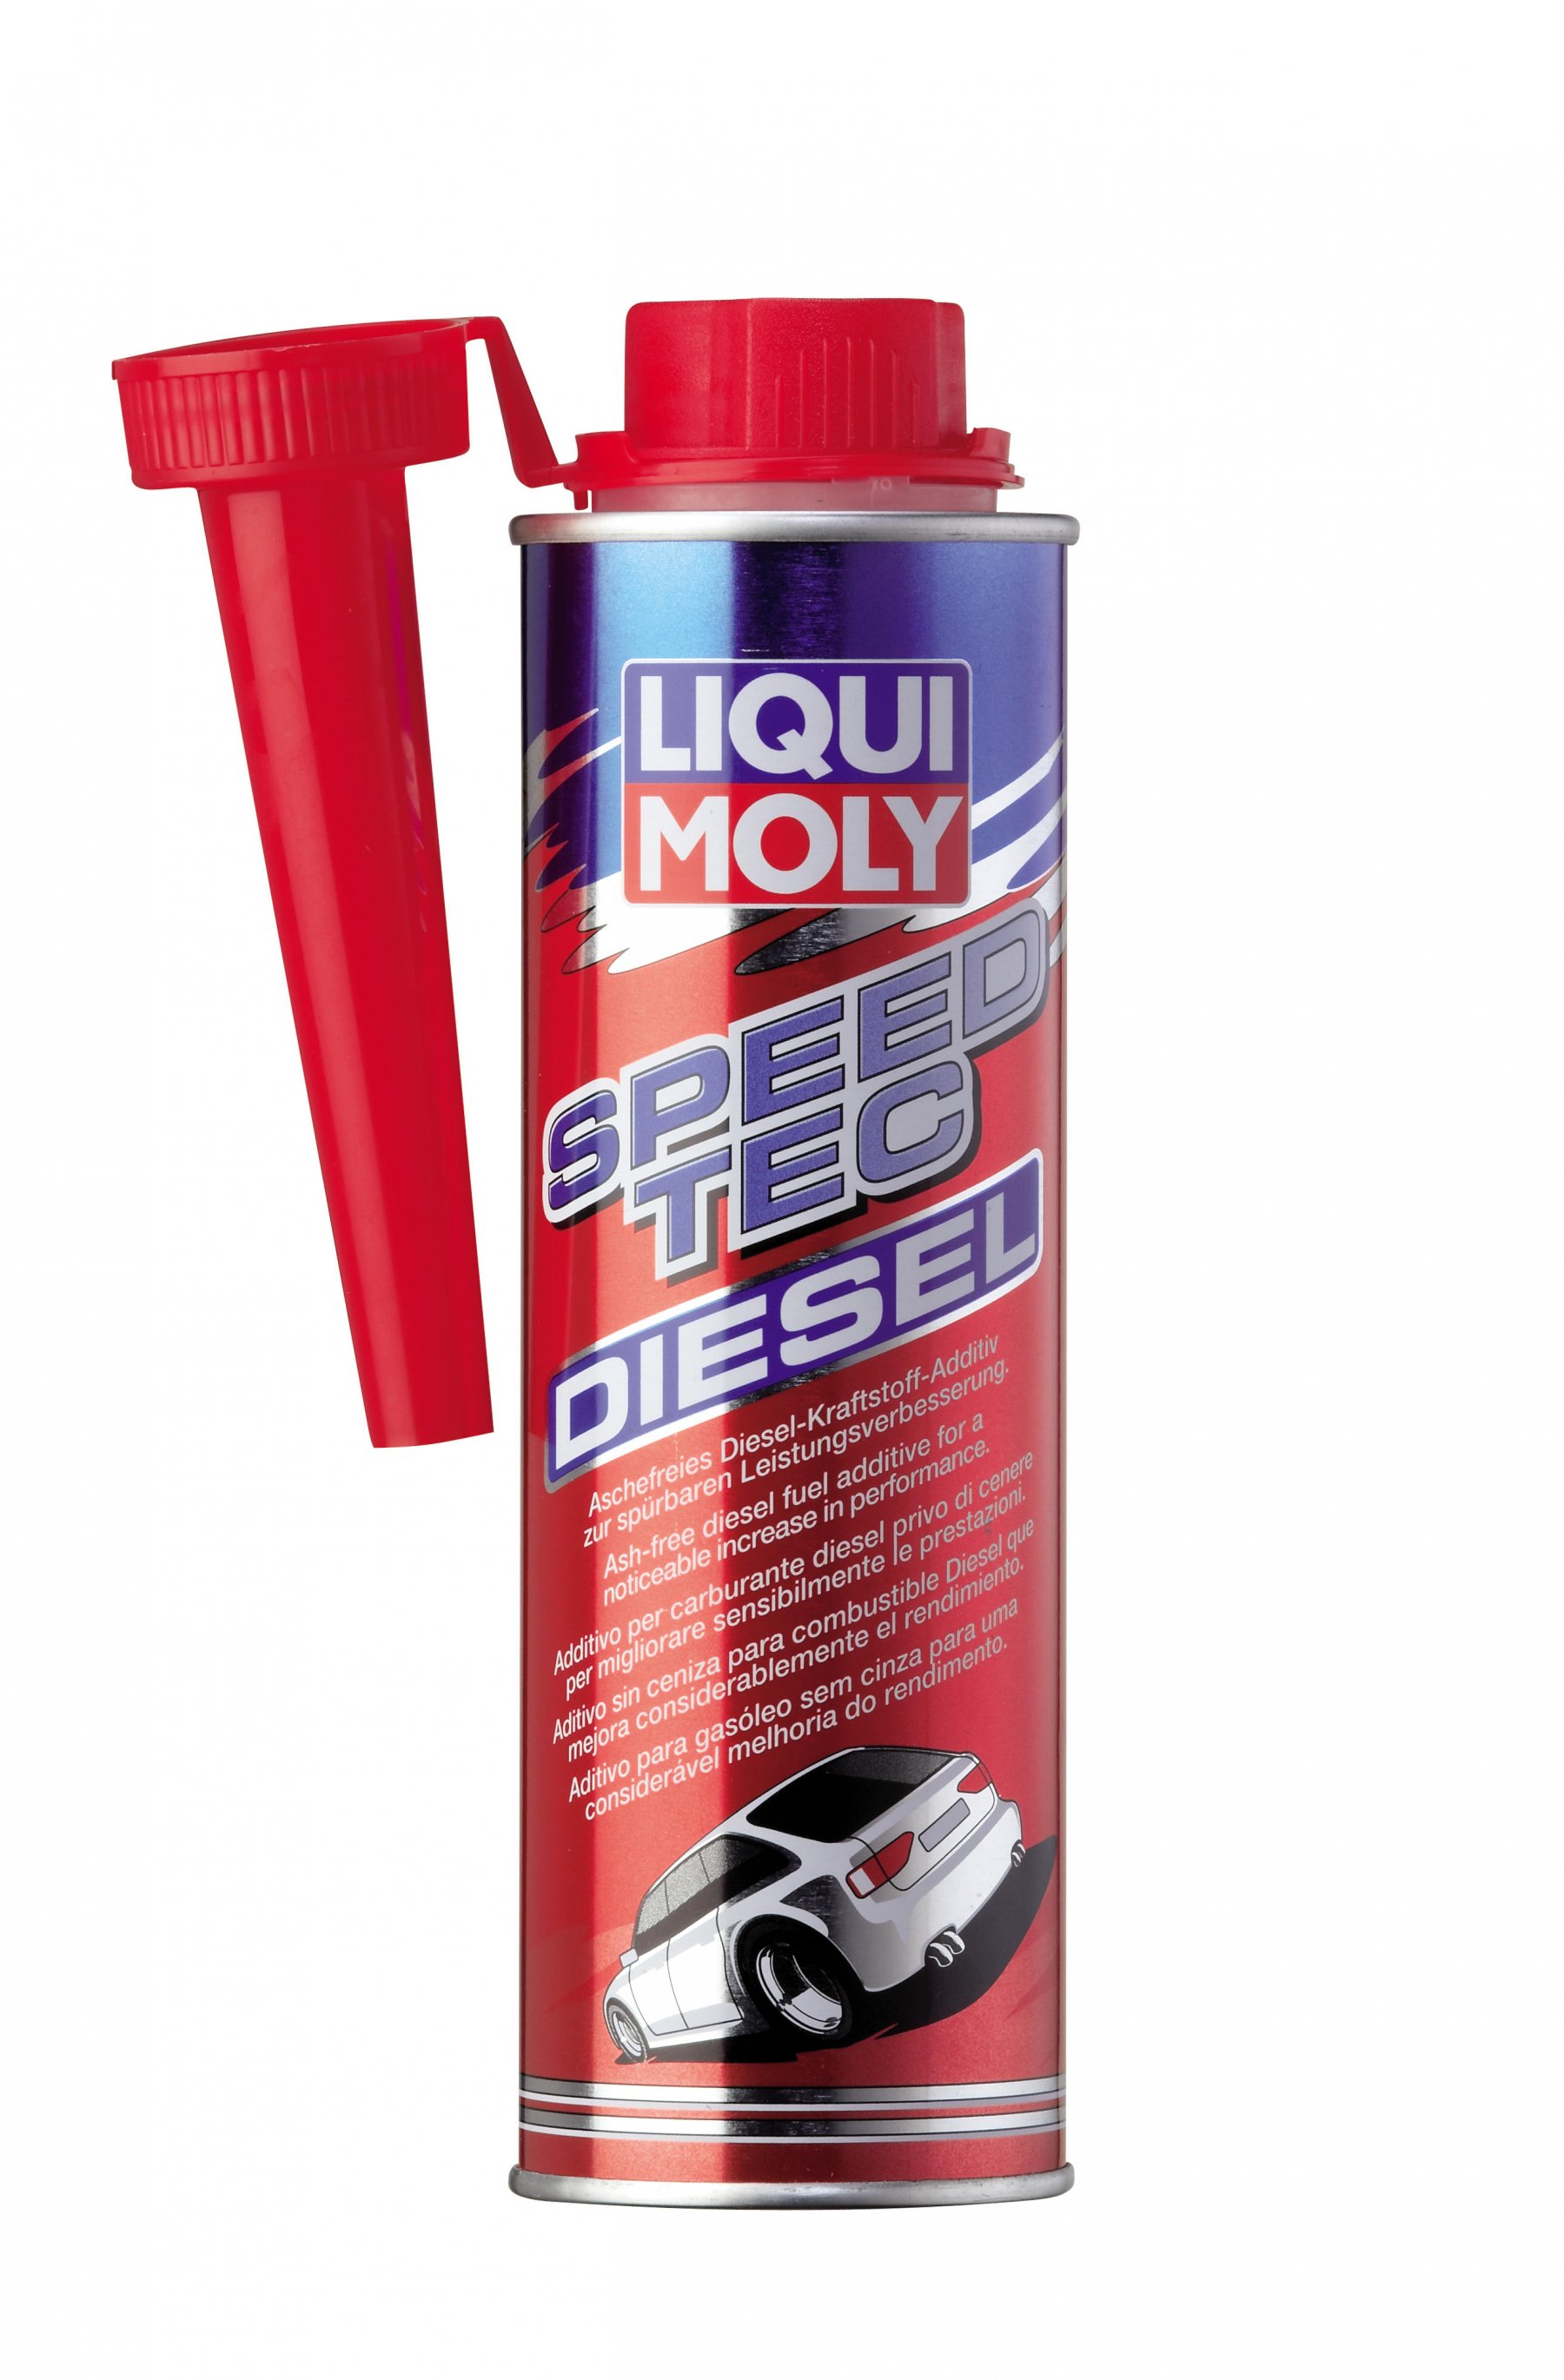 Liqui Moly Speed Tec Diesel Присадка для улучшения процесса сгорания и ускорения 300 мл